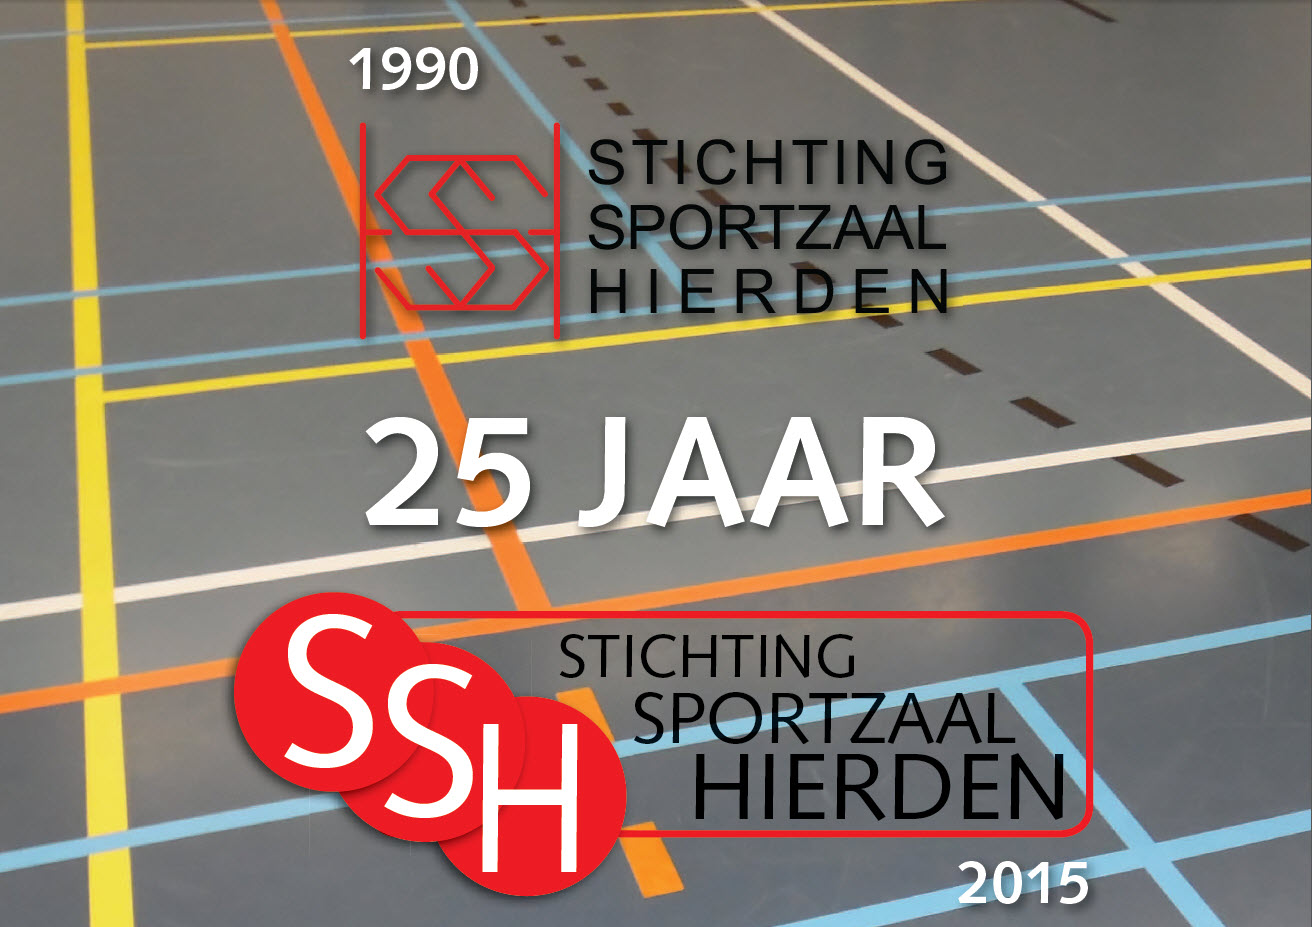 Stichting Sportzaal Hierden